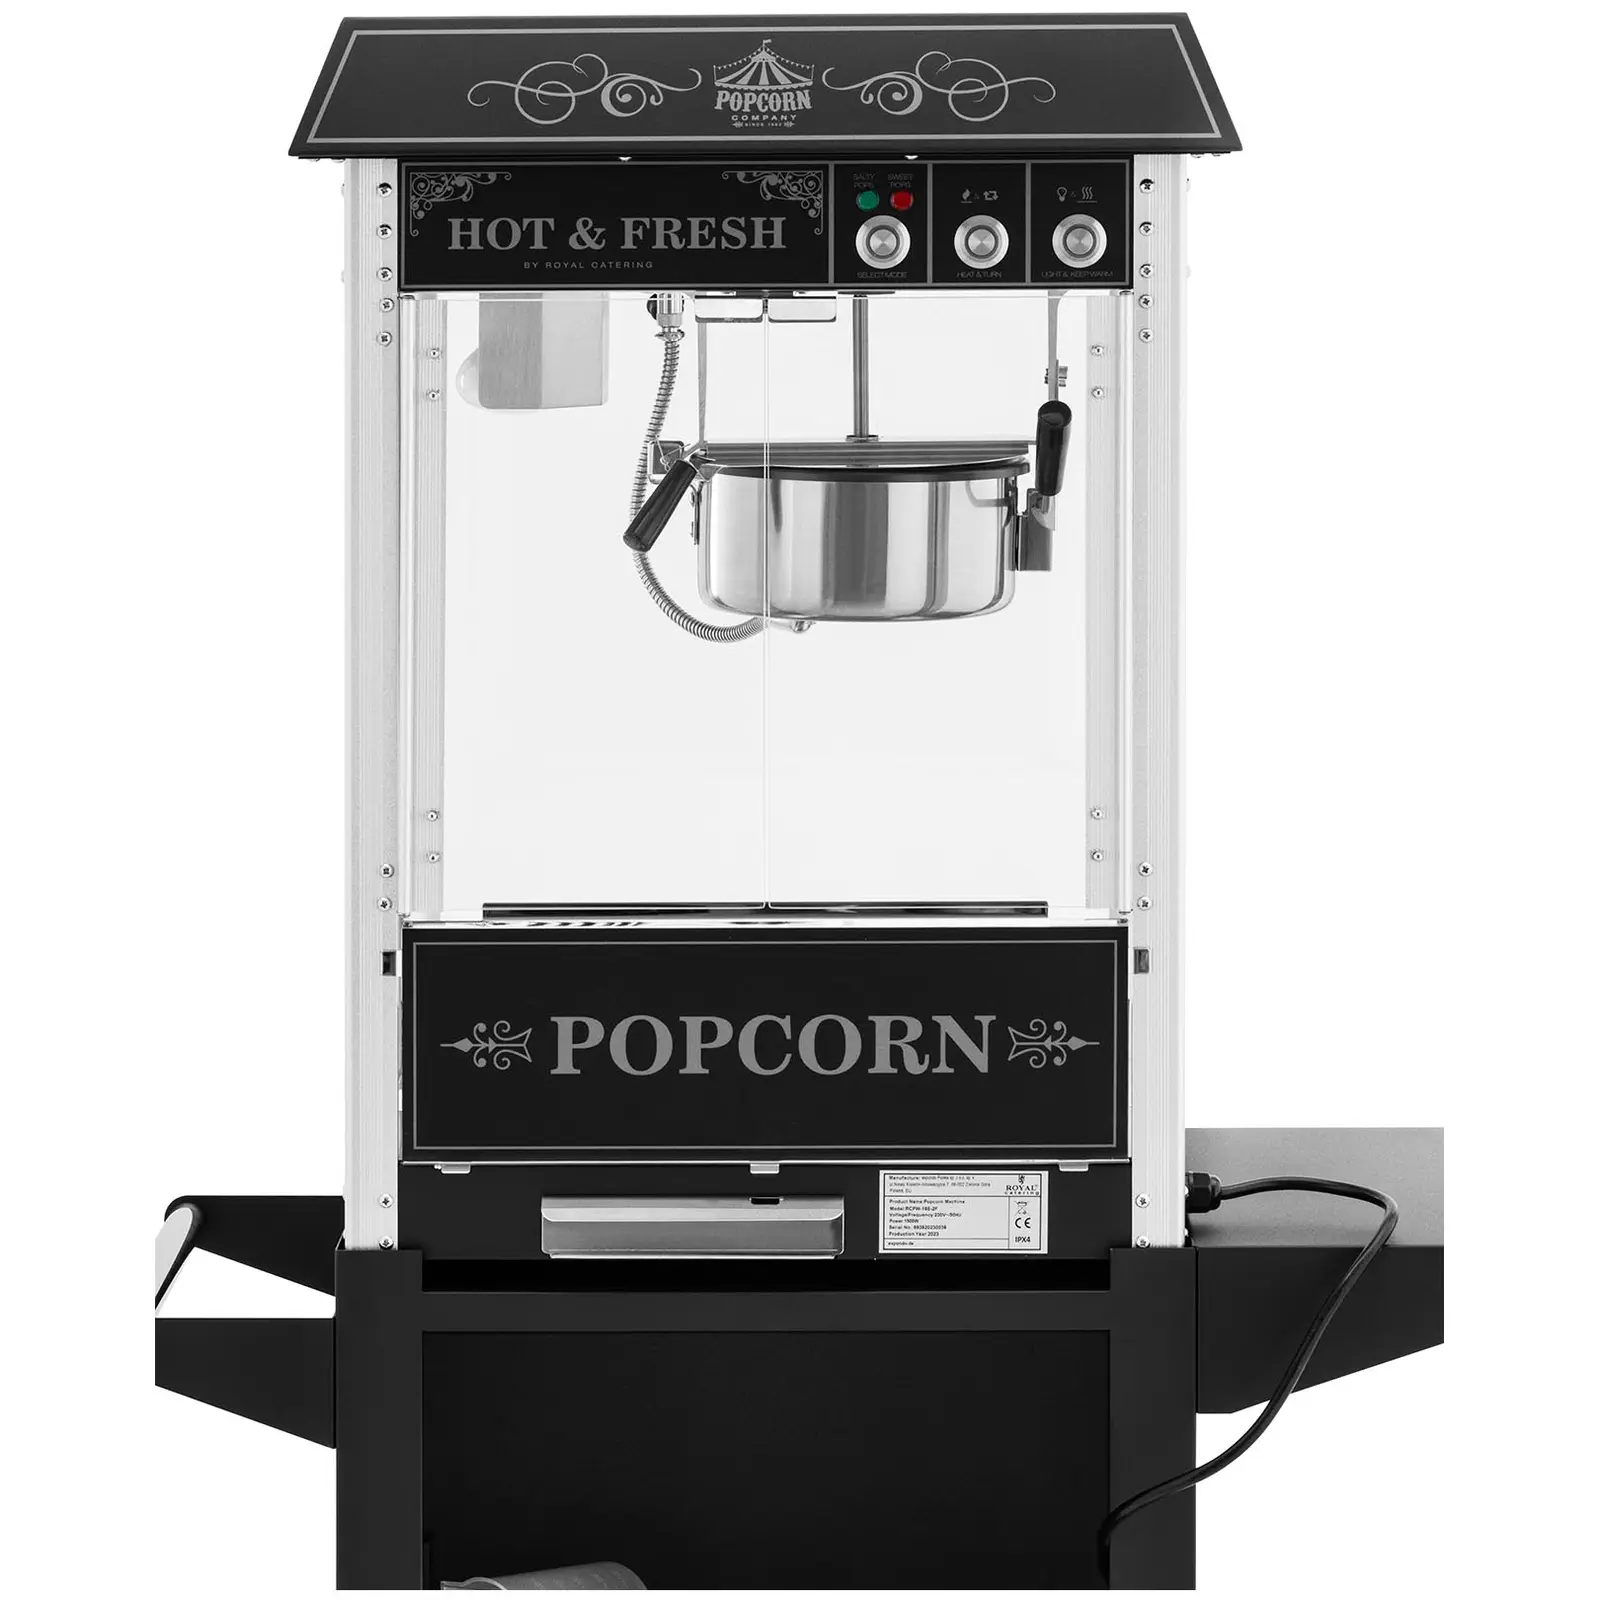 Macchina per popcorn con carretto - Design retró - 150 / 180 °C - Nera - Royal Catering